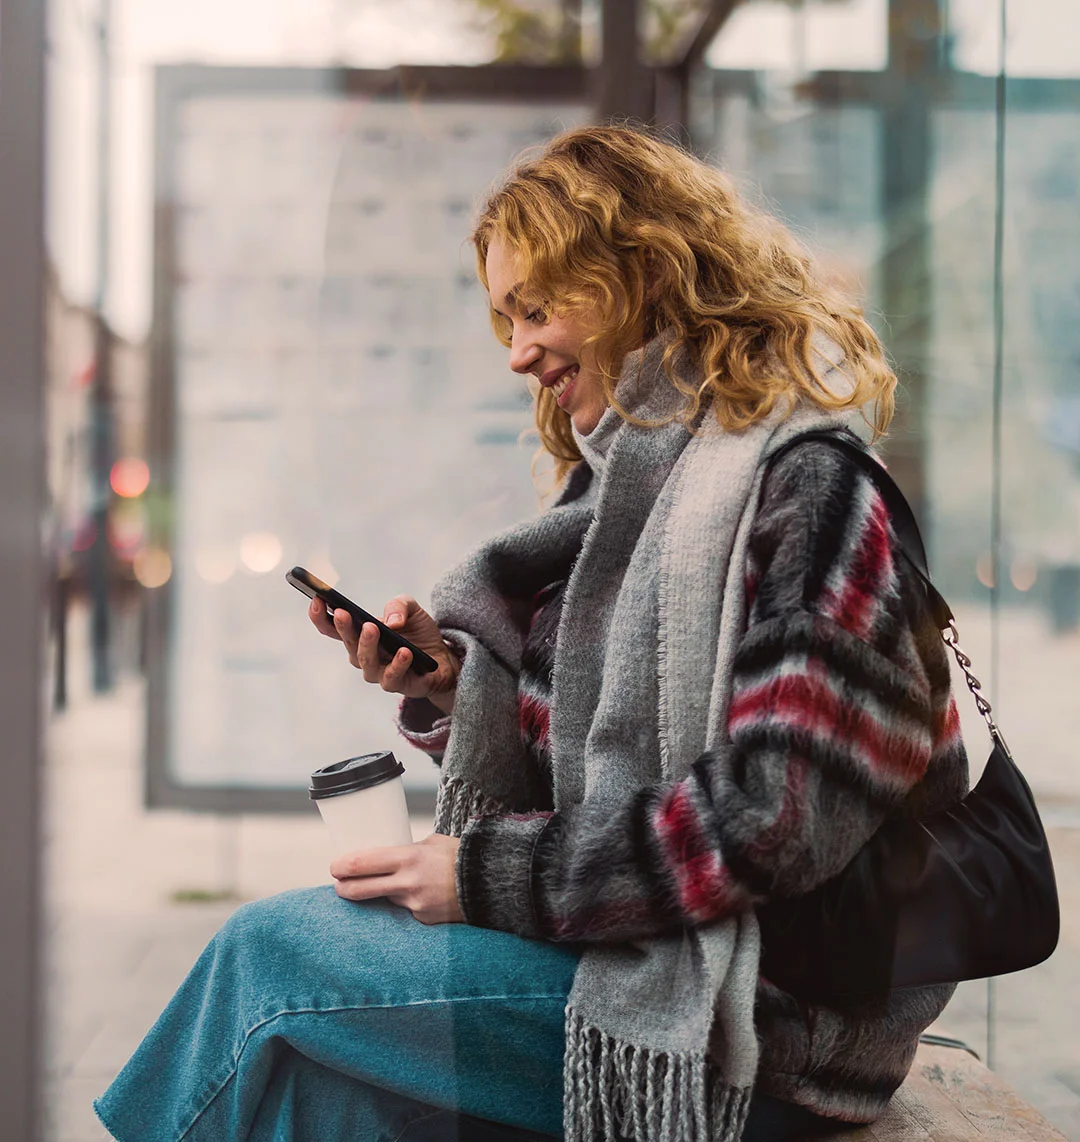 Eine junge Frau sitzt an einer Bushaltestelle und schaut lächelnd in ihr Handy.